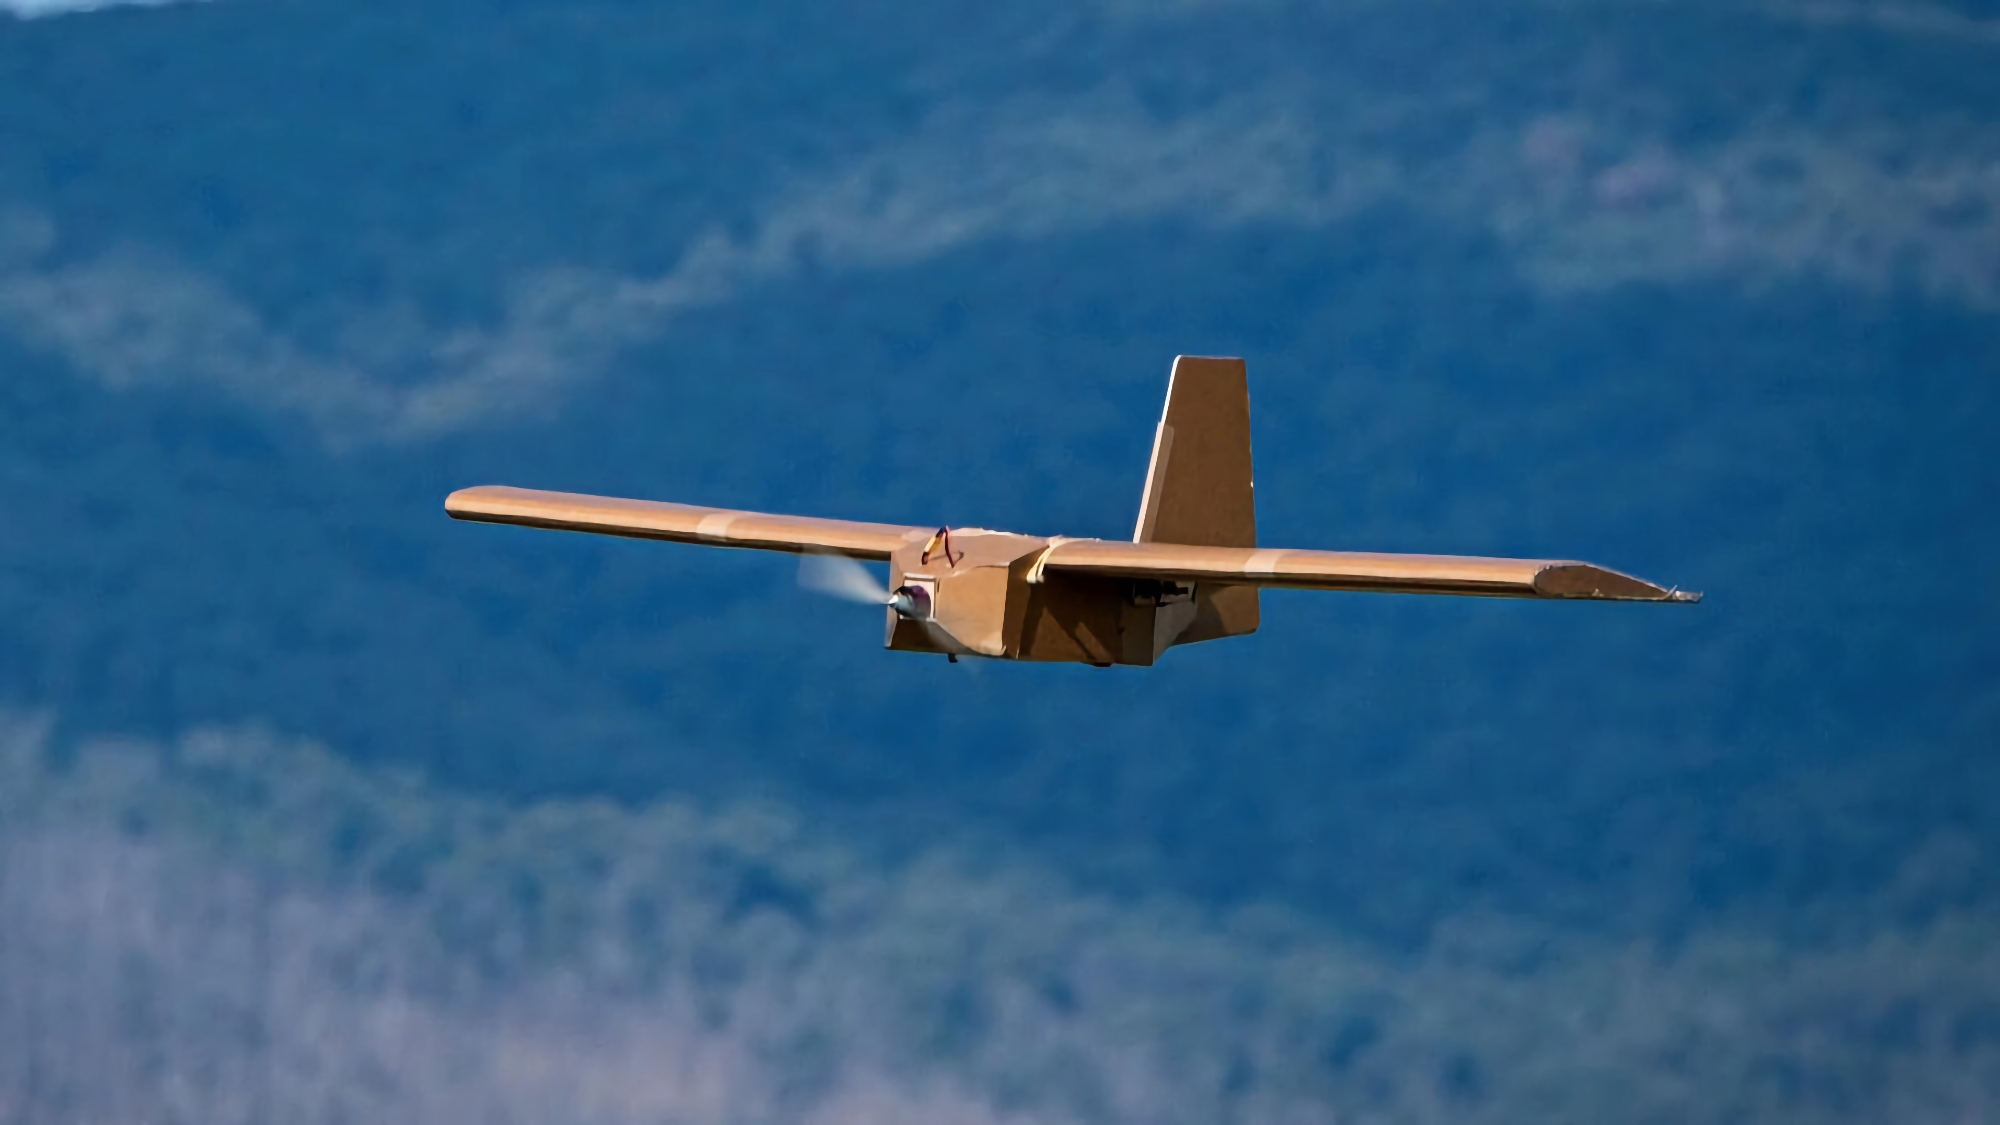 L'Australie envoie chaque mois une centaine de drones en carton PPDS à l'Ukraine. Le drone peut transporter jusqu'à 3 kg d'explosifs et voler jusqu'à une distance de 120 km.